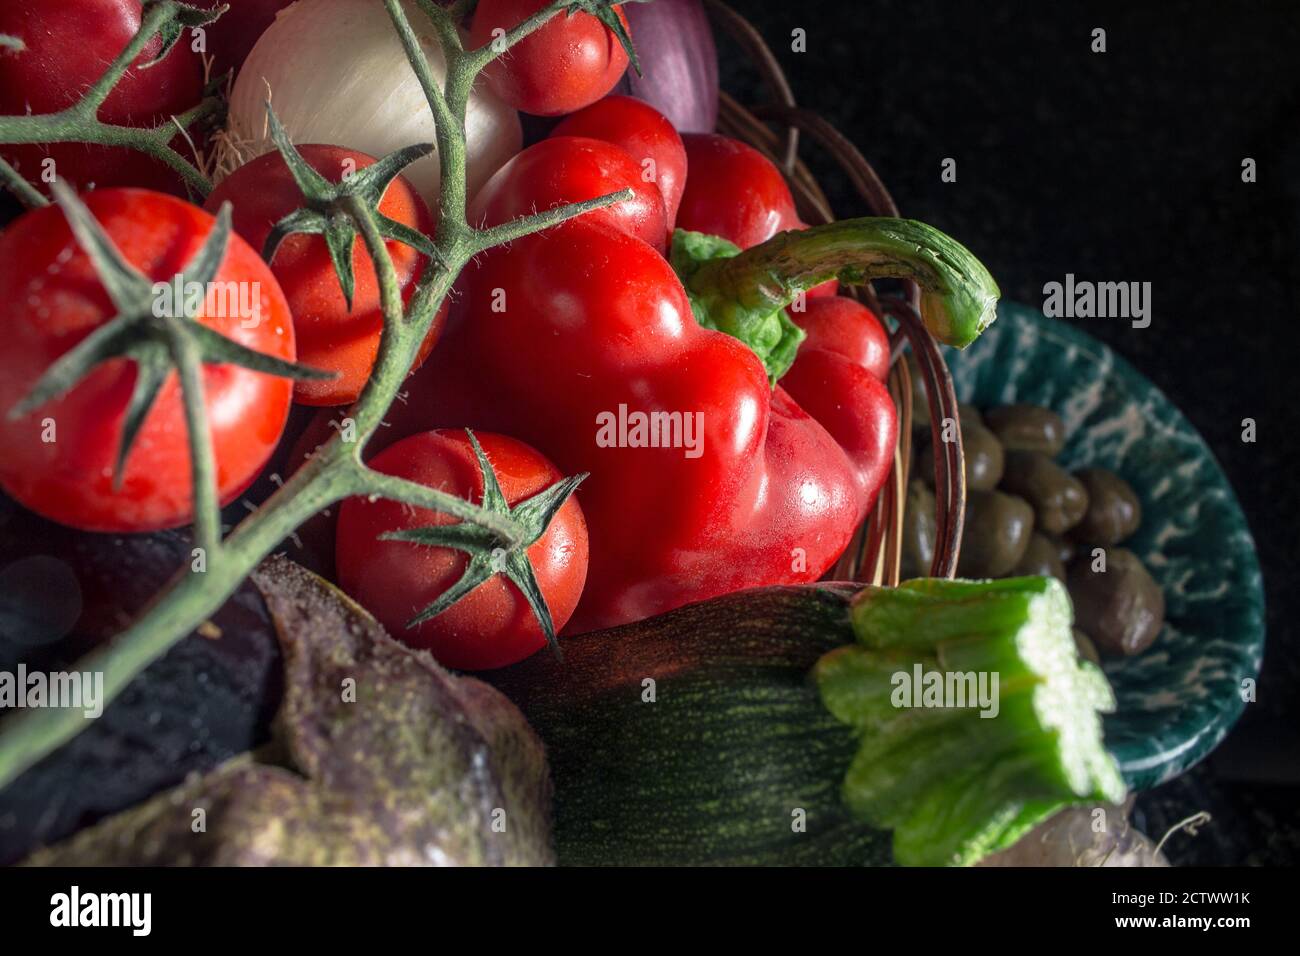 Détail de quelques légumes de la cuisine méditerranéenne - Légumes d'été dans le sud de l'Italie Banque D'Images